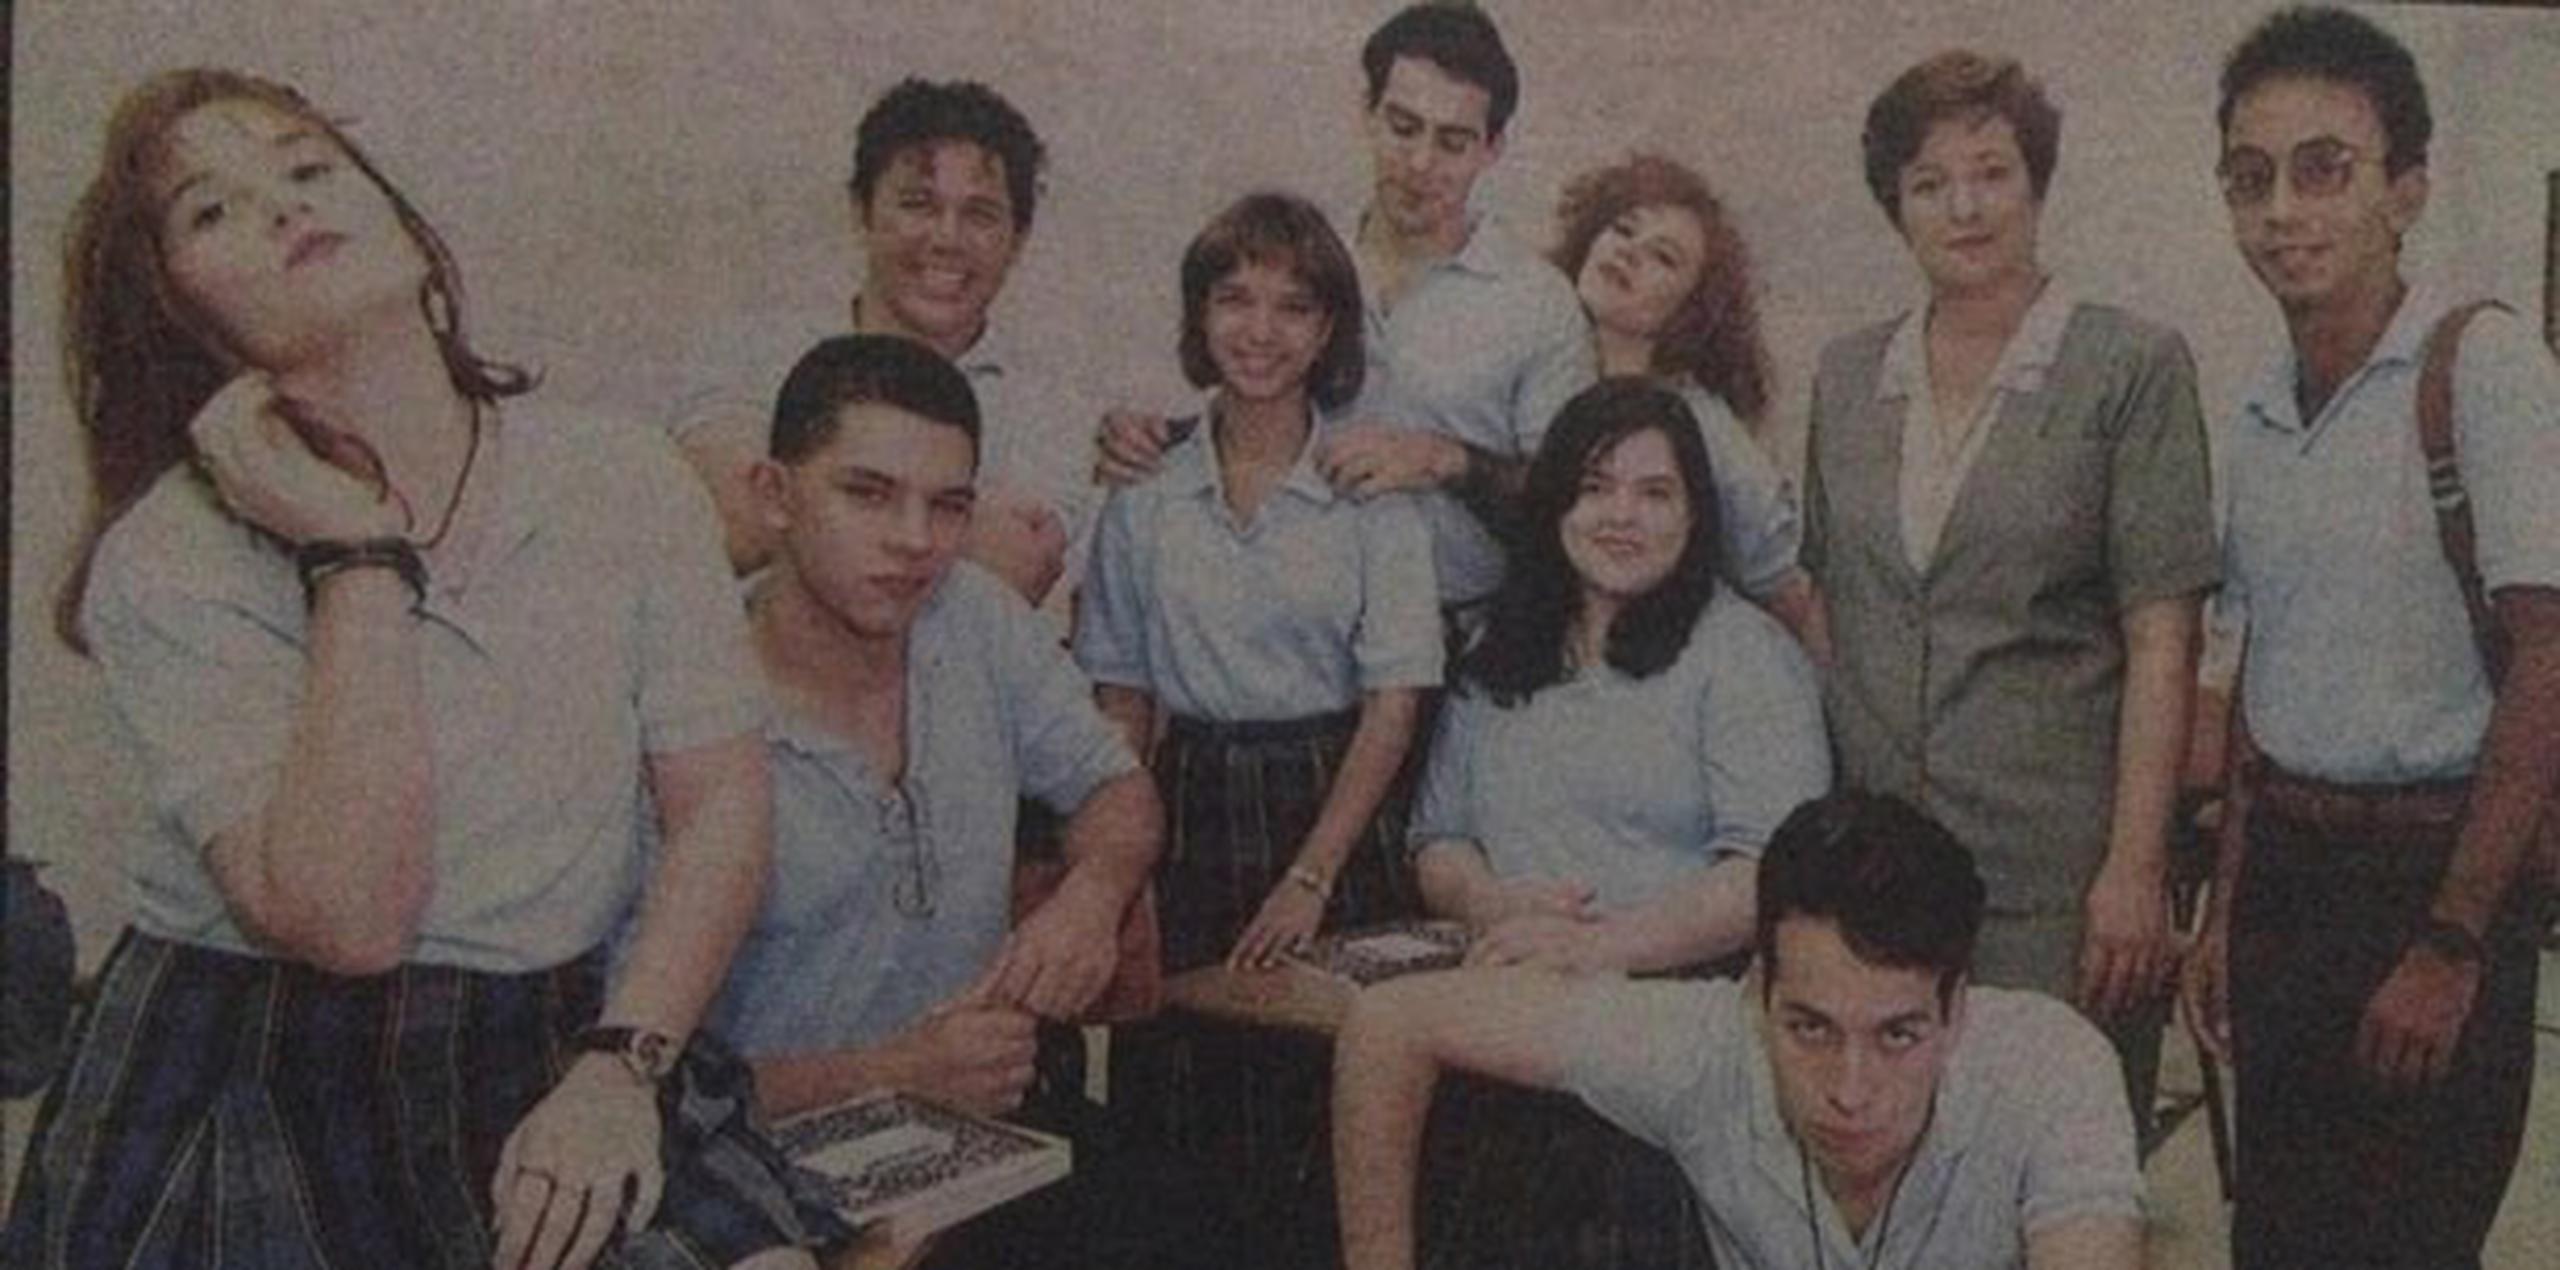 Noris Joffre (primera a la izquierda) recuerda con nostalgia su personaje en la serie de televisión, en la que compartió con actores como Adamari López, Jorge Castro, Liza Lugo y Sharon Riley. (Suministrada)